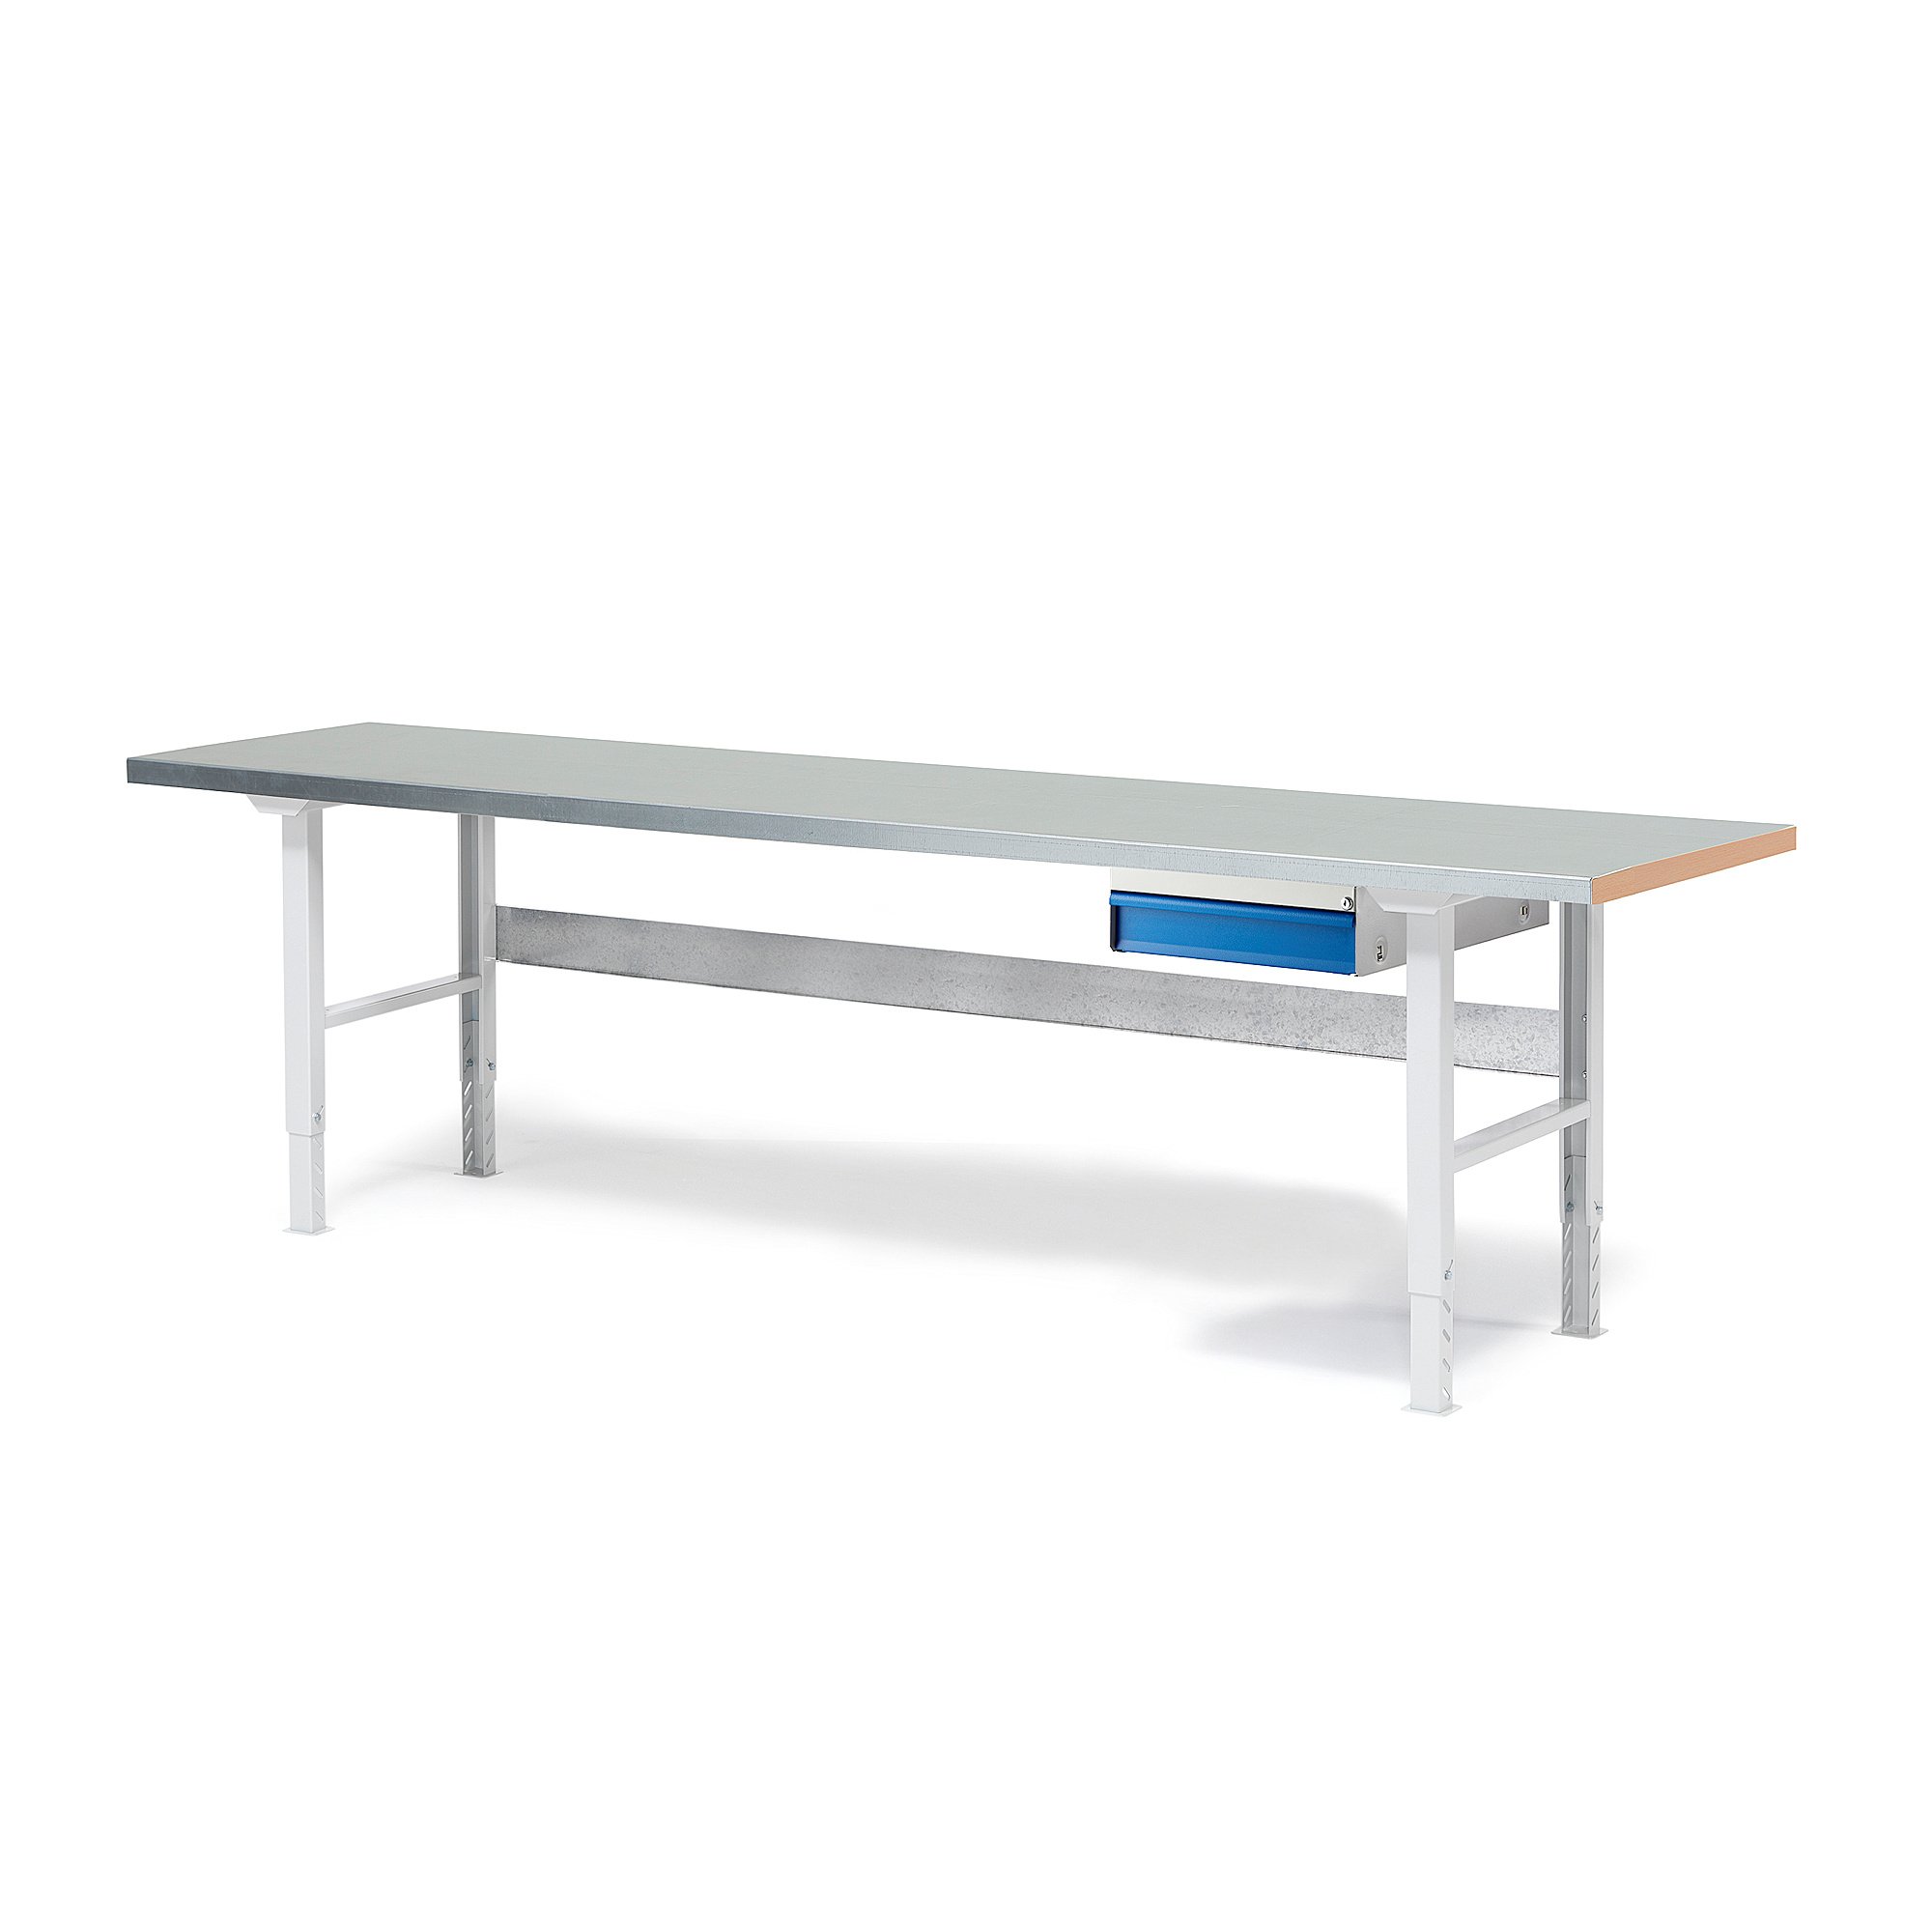 Dílenský stůl SOLID, 2500x800 mm, nosnost 750 kg, 1 zásuvka, ocelový povrch